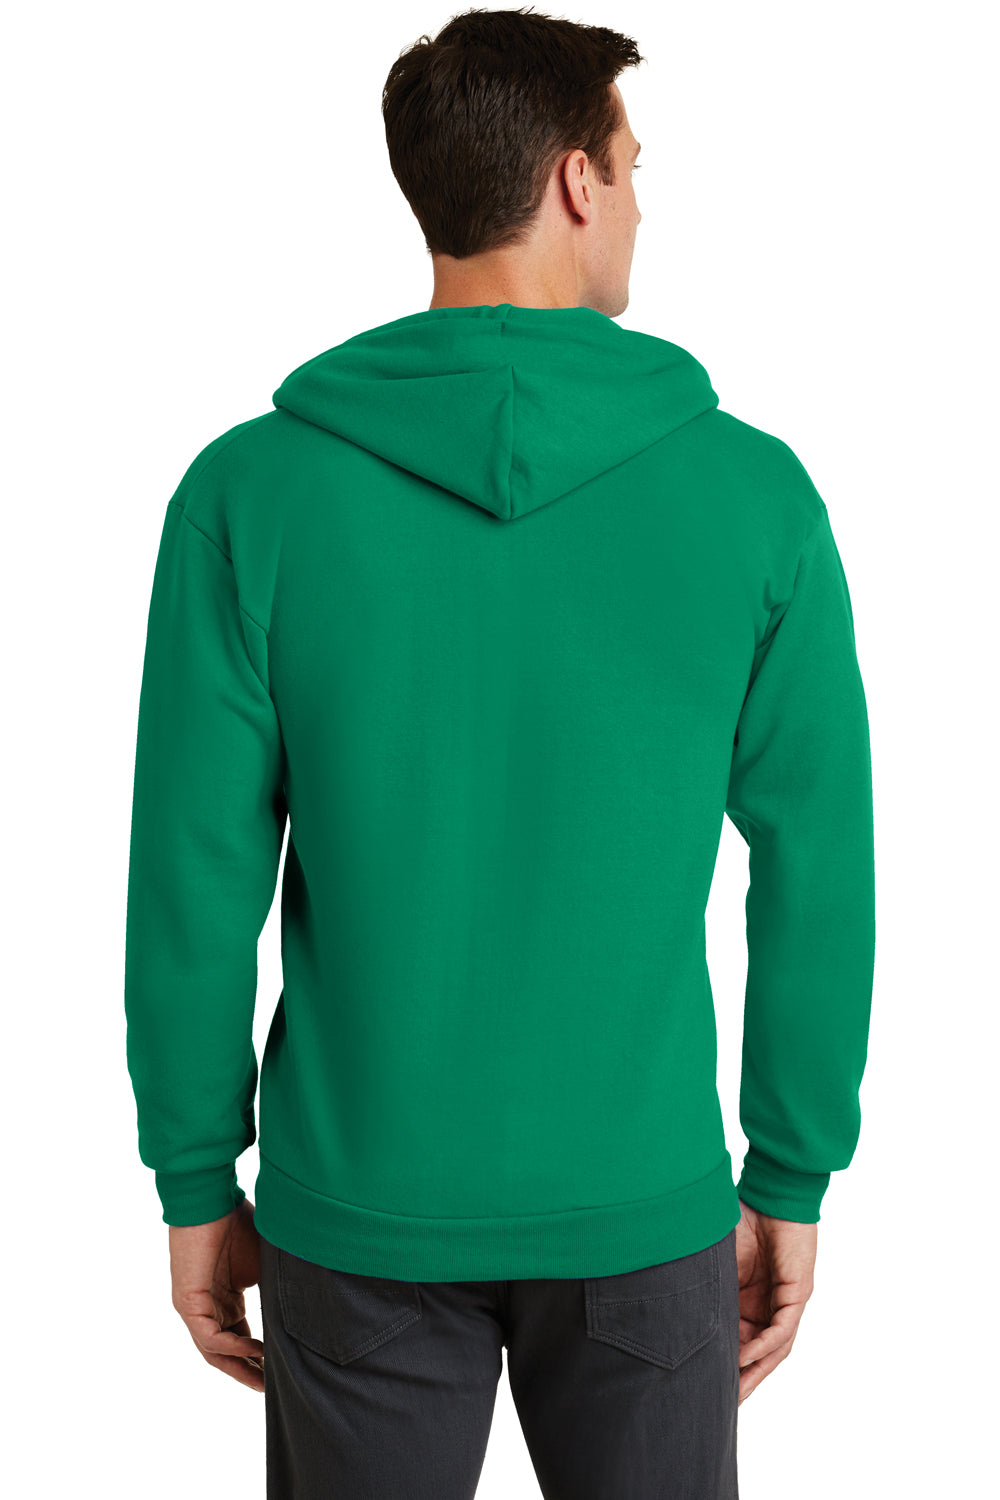 Port & Company PC78ZH Mens Core Fleece Full Zip Hooded Sweatshirt Hoodie Kelly Green Back